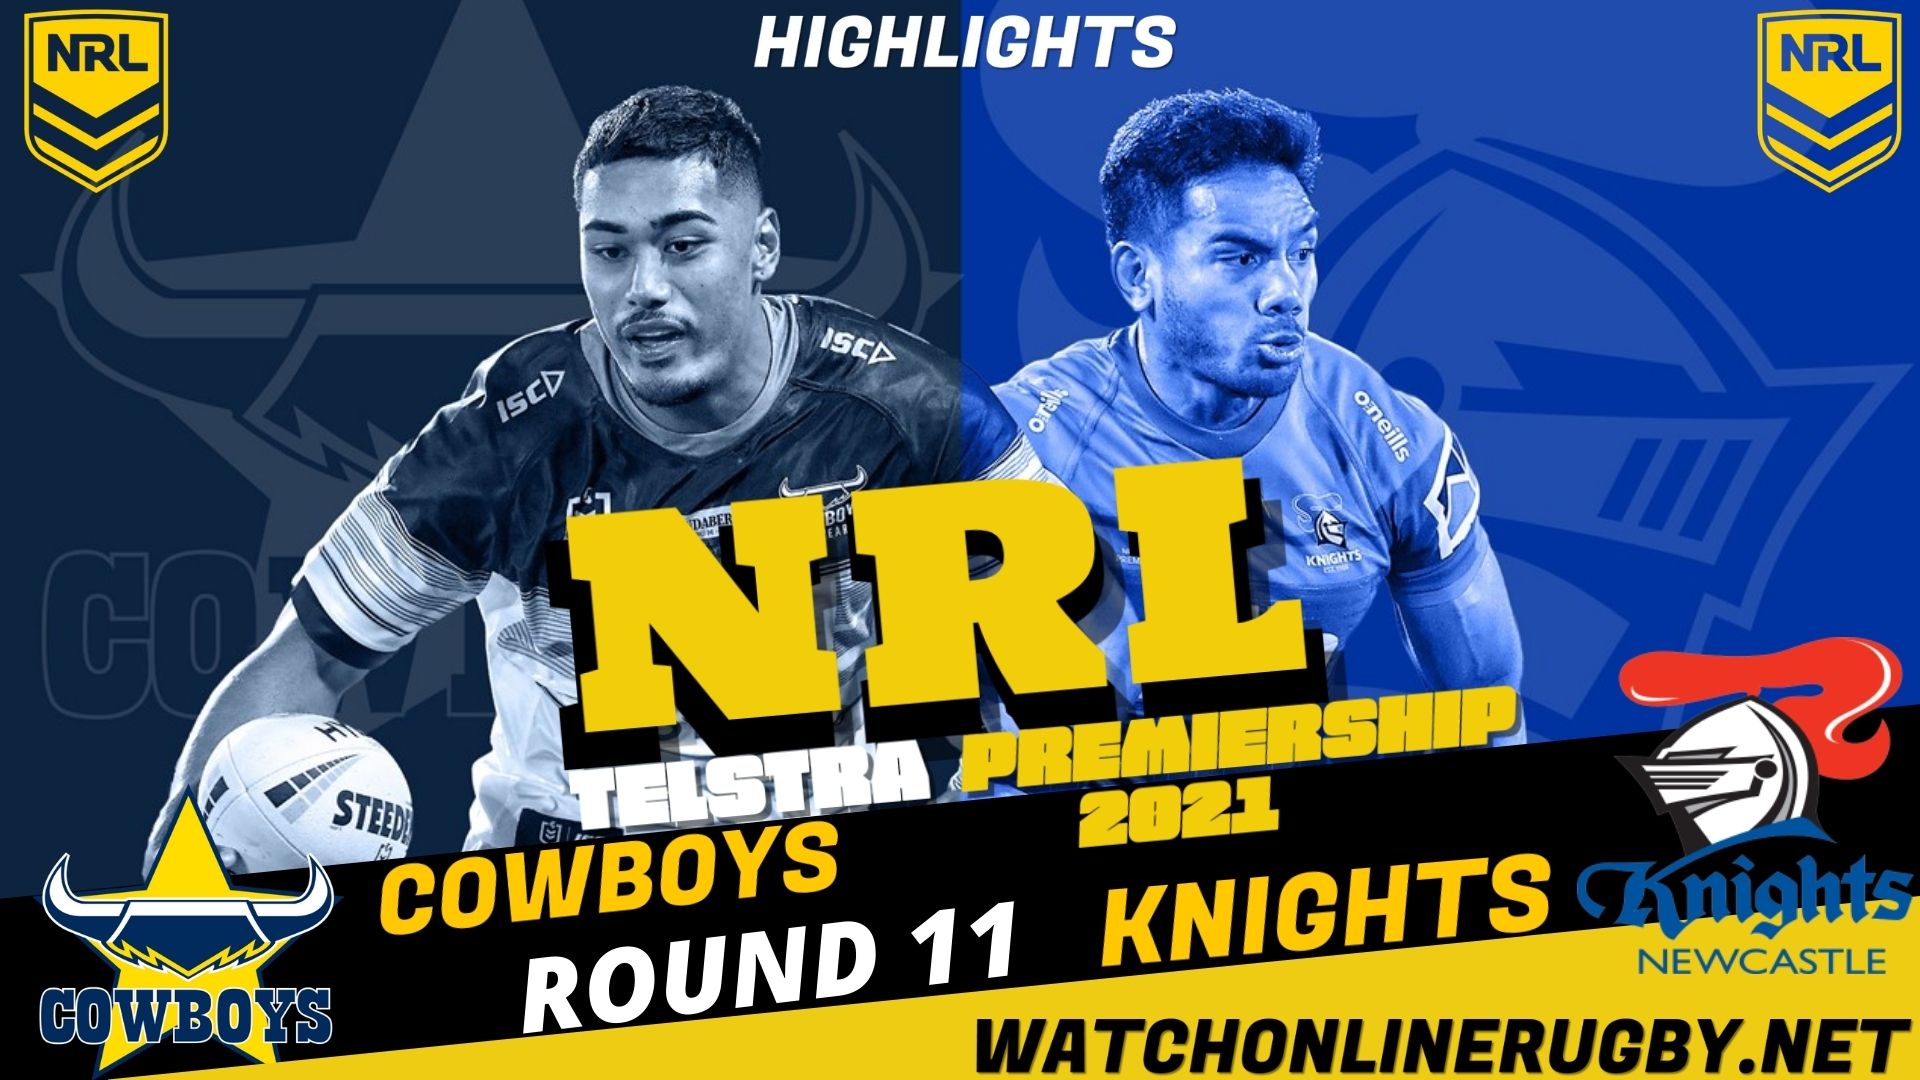 Cowboys Vs Knights Highlights RD 11 NRL Rugby